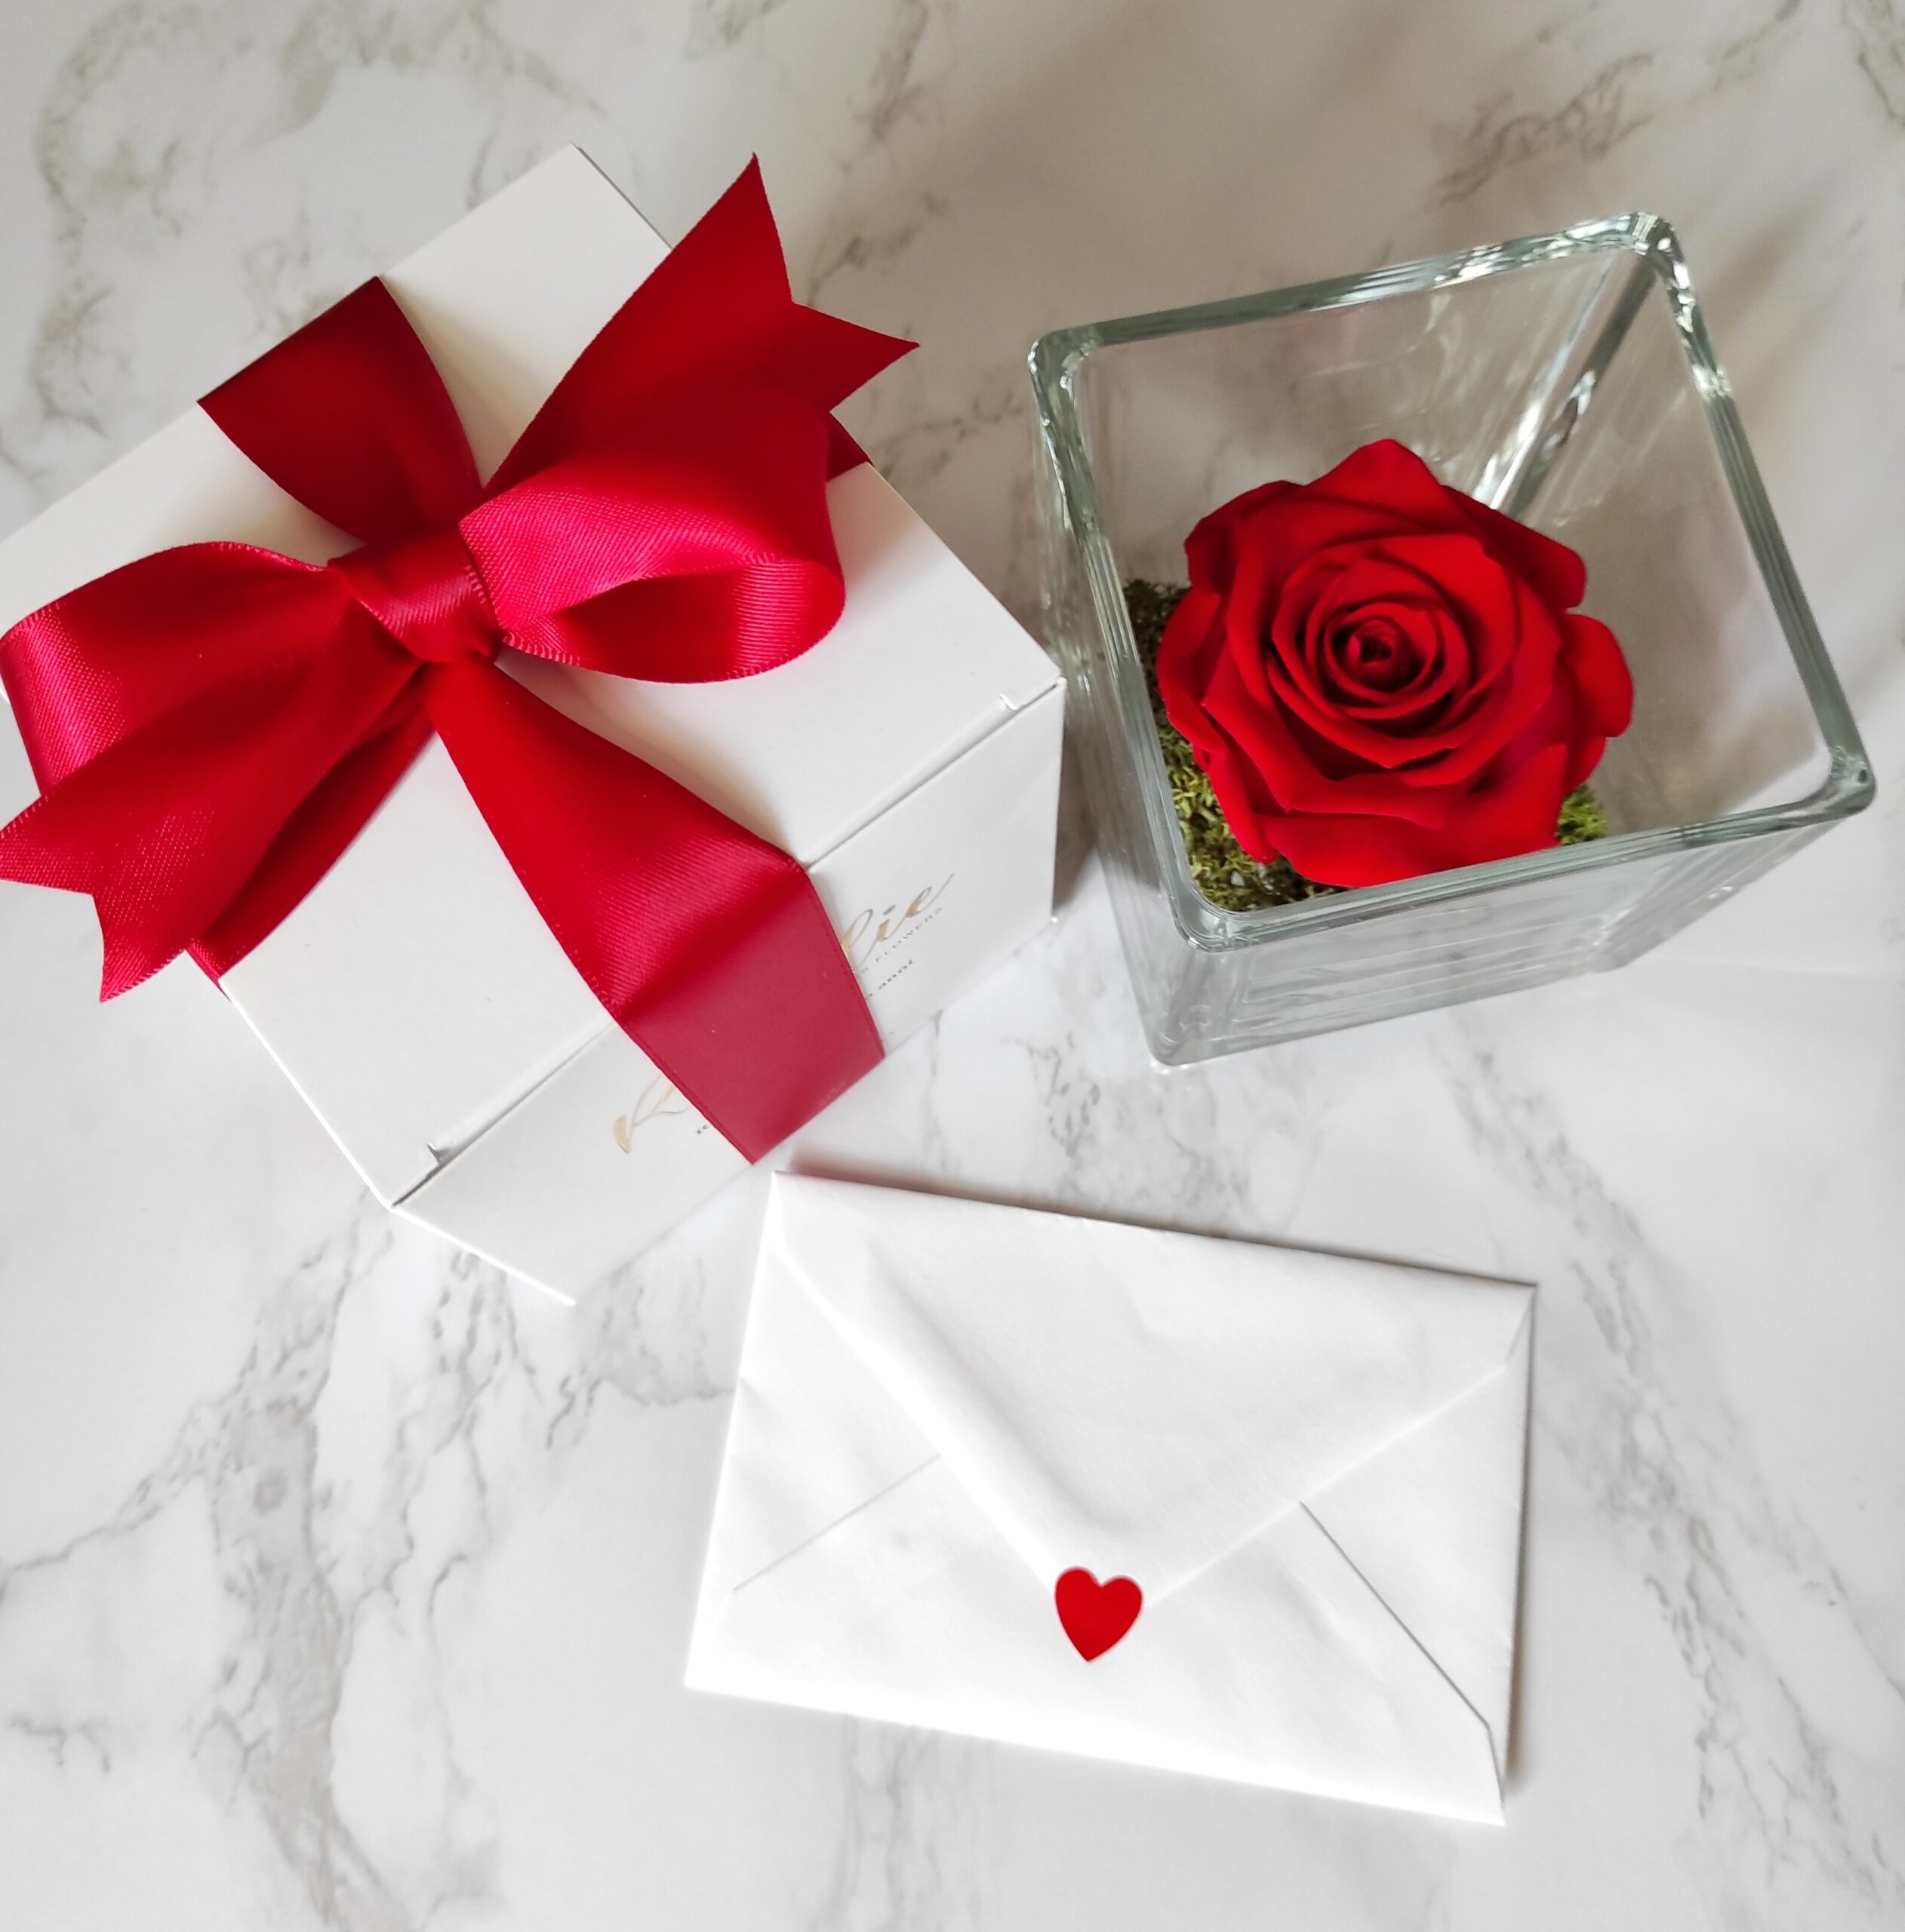 rosa rossa stabilizzata in cubo di vetro con confezione regalo con nastro rosso e biglietto